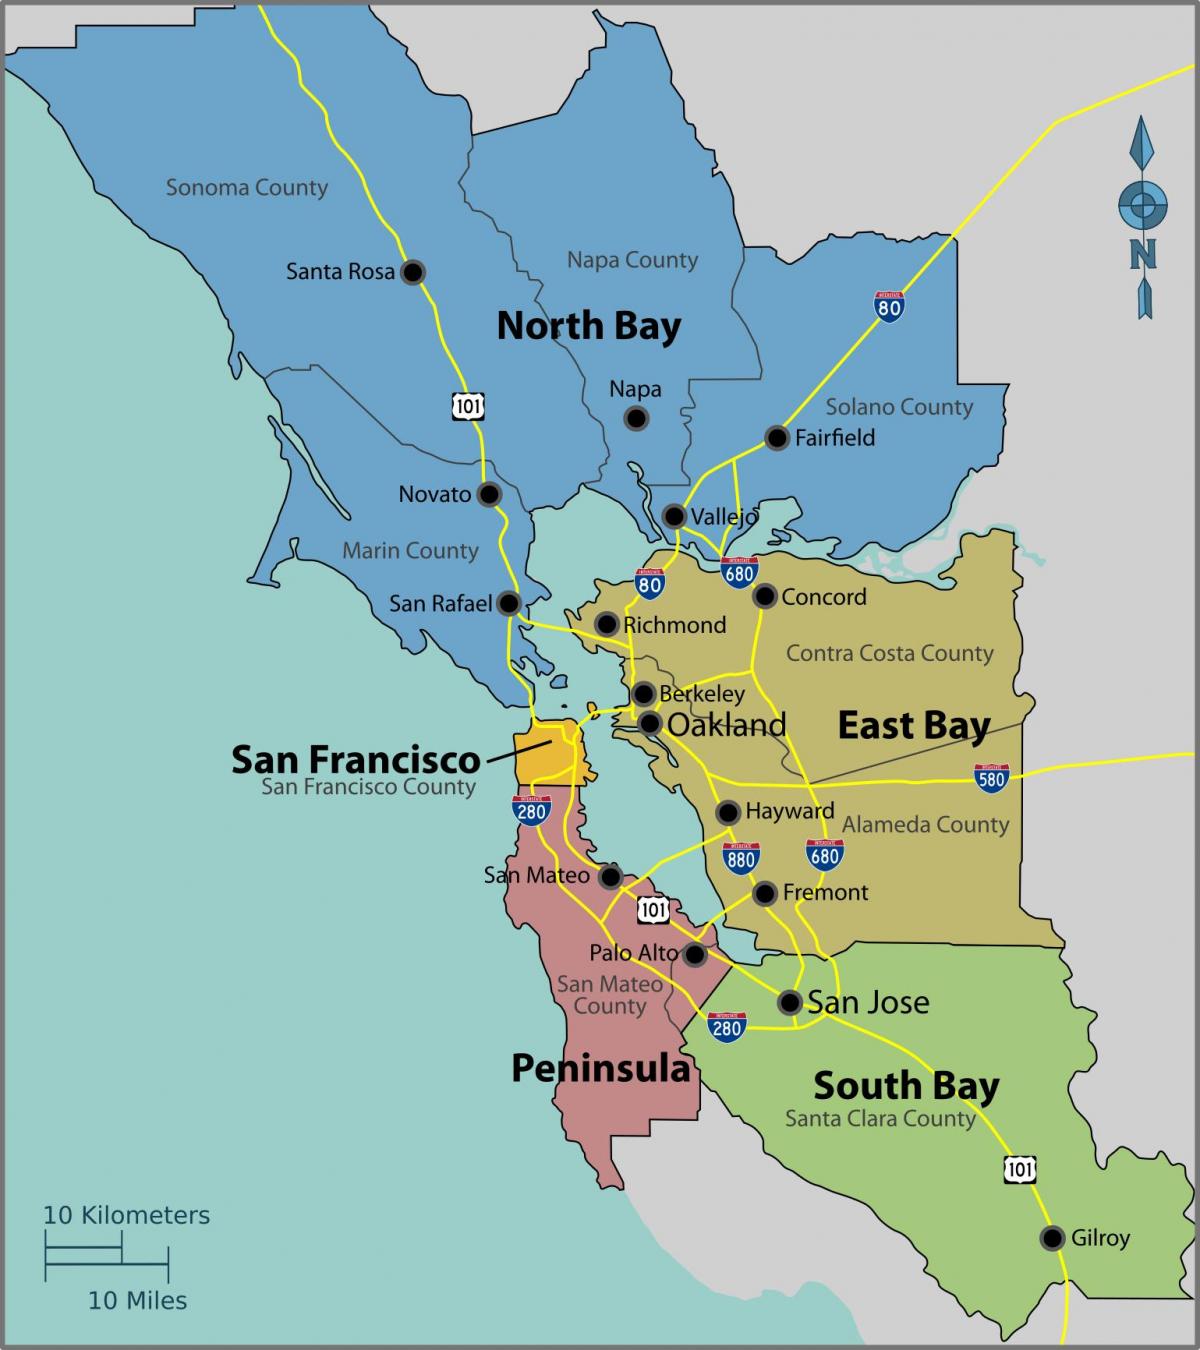 Сан Франциско на картата